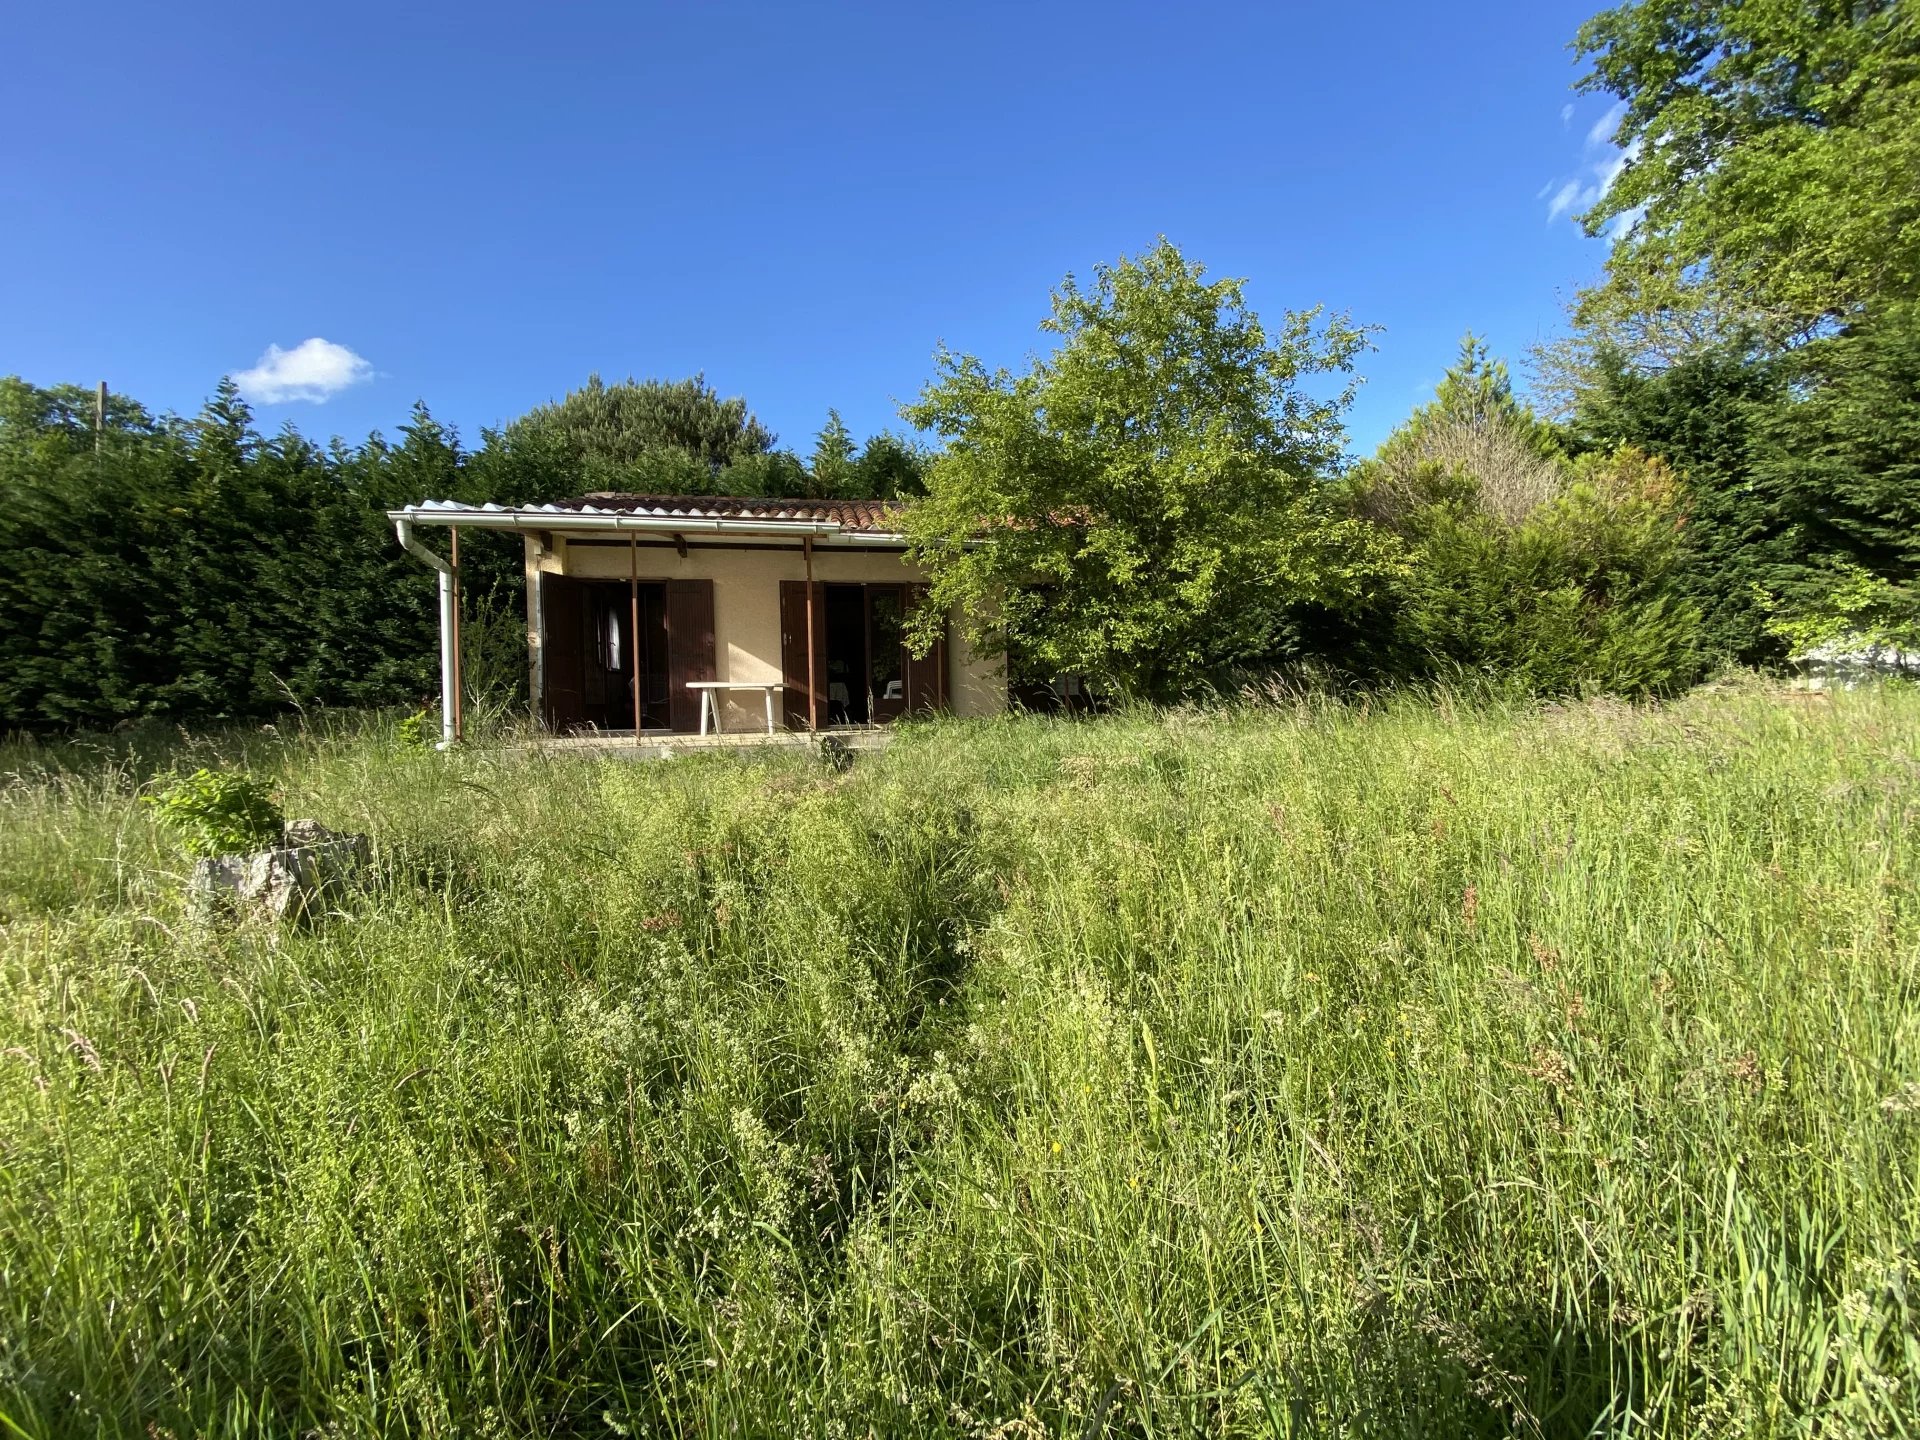 Proche Aurignac, petite maison de campagne T2 sur 1,0402hectare de prairies, bois